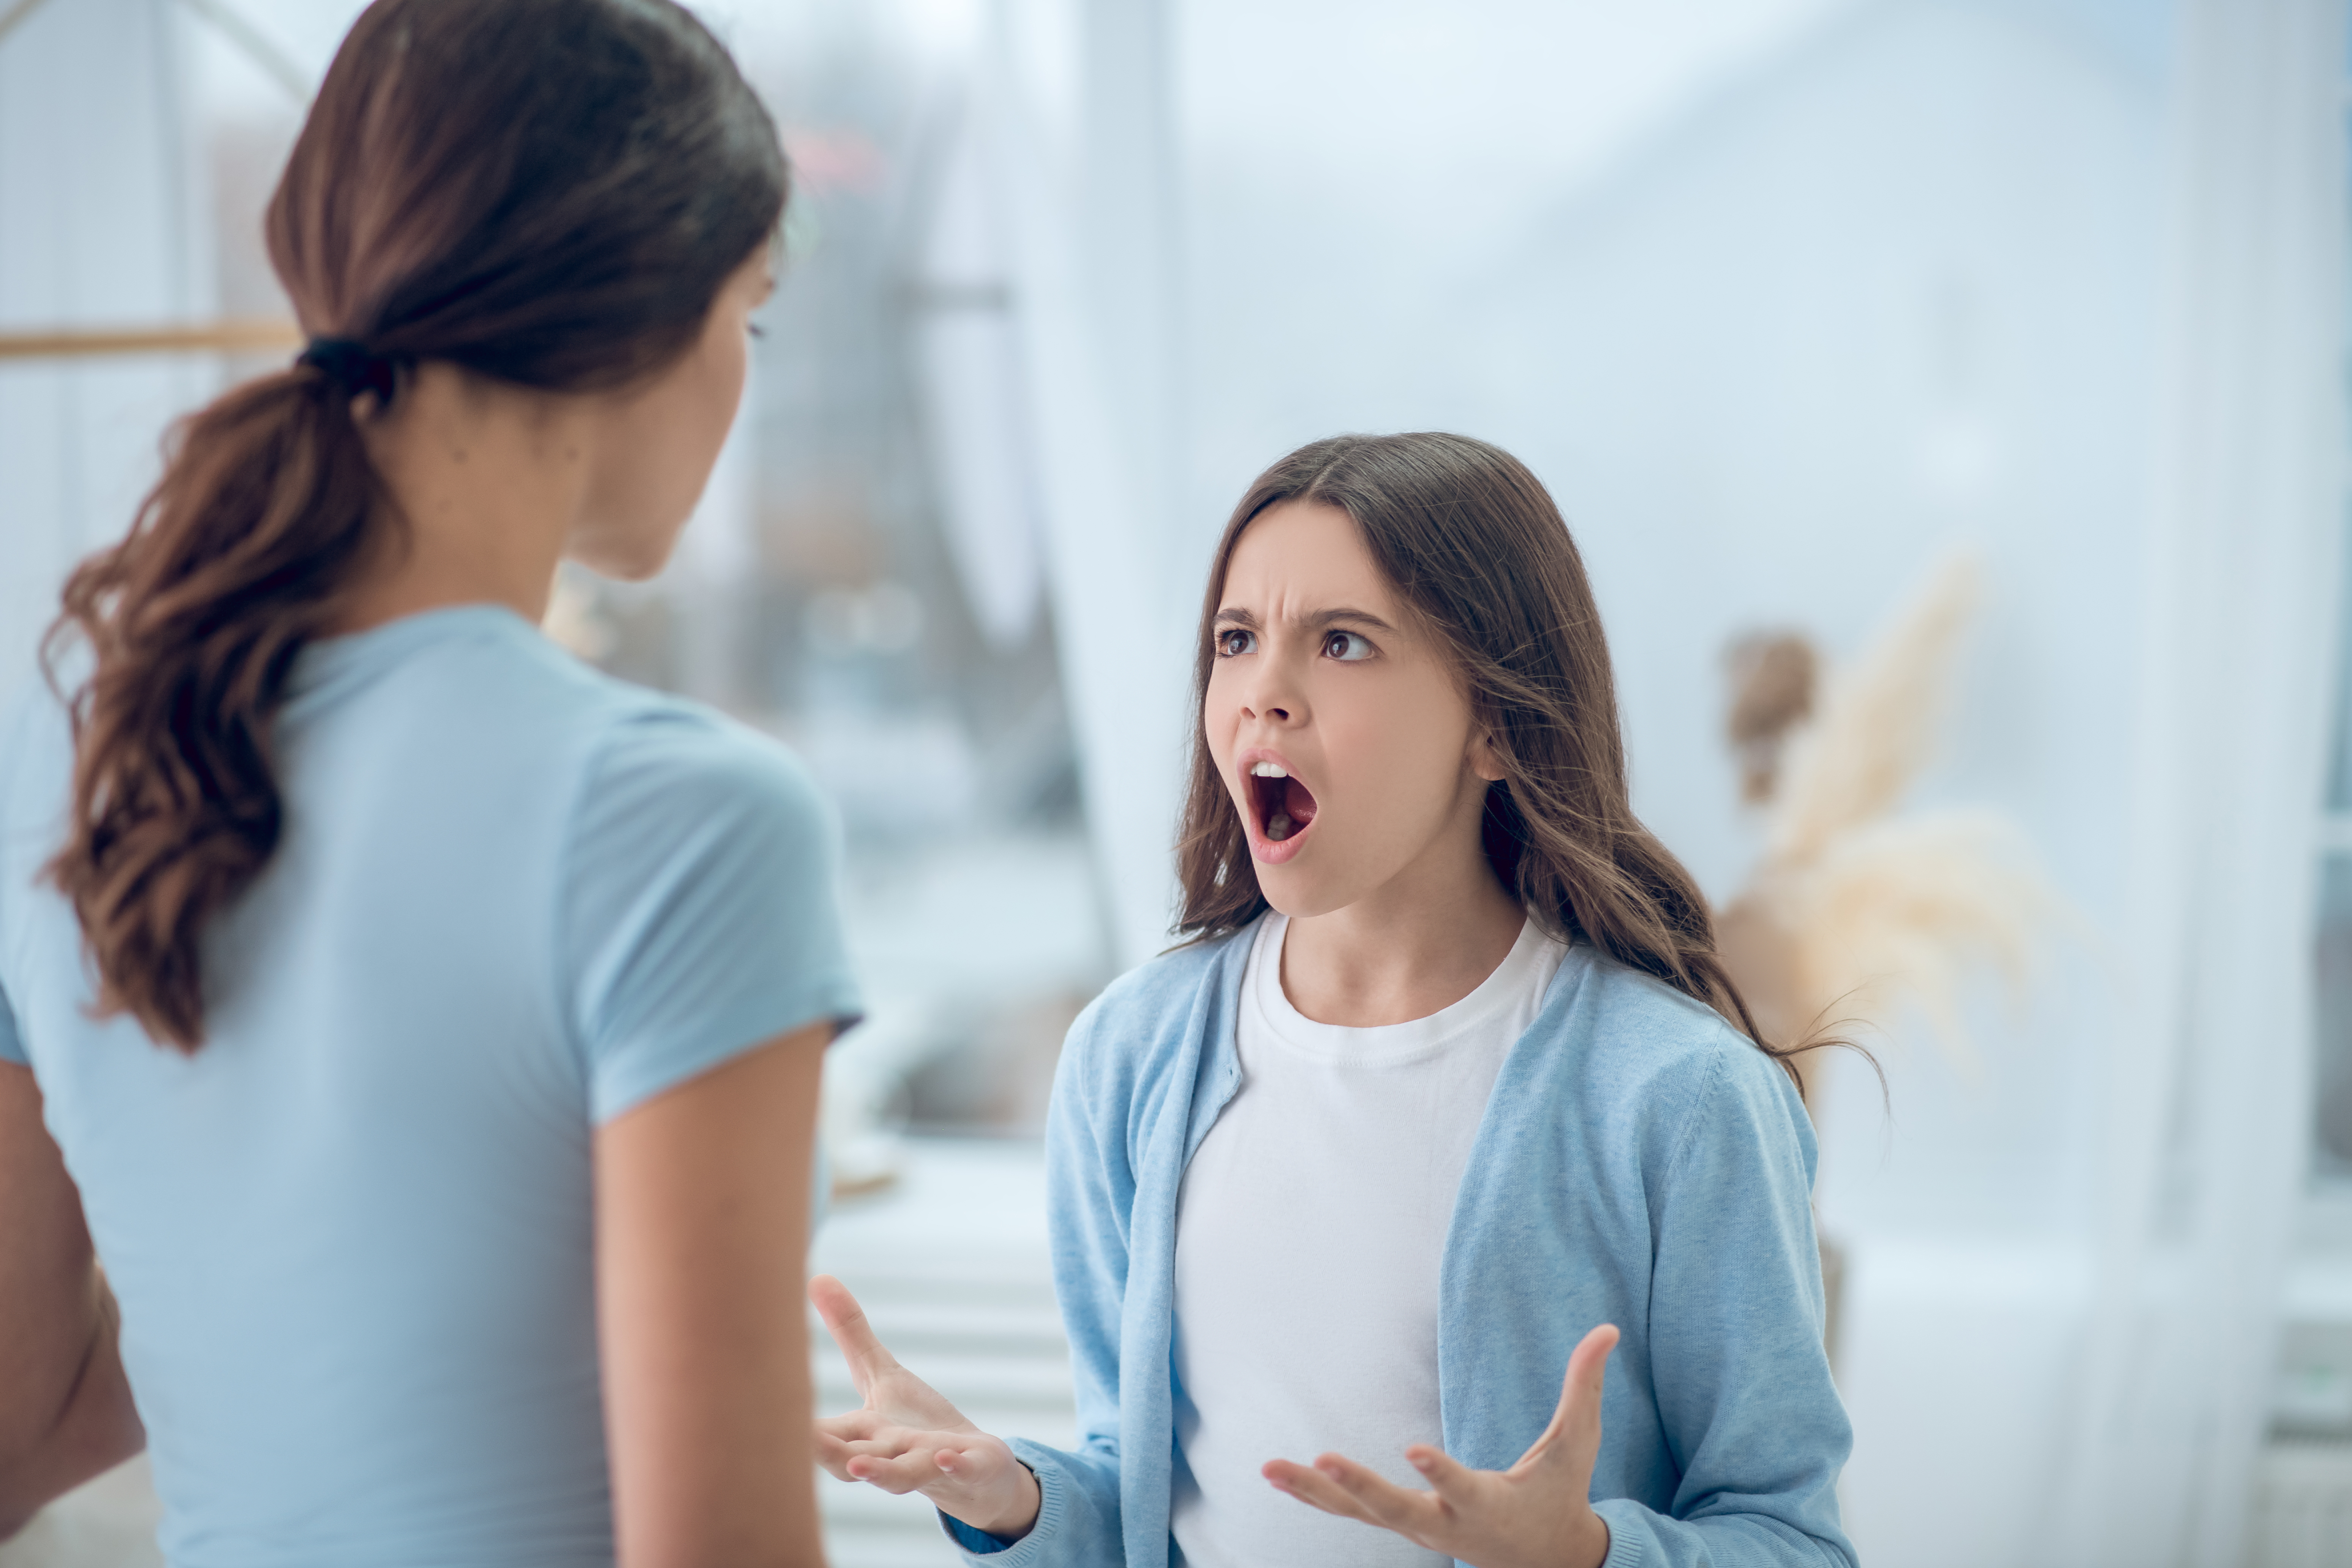 Ein Mädchen im Teenageralter schreit die Frau an, die vor ihr steht | Quelle: Shutterstock